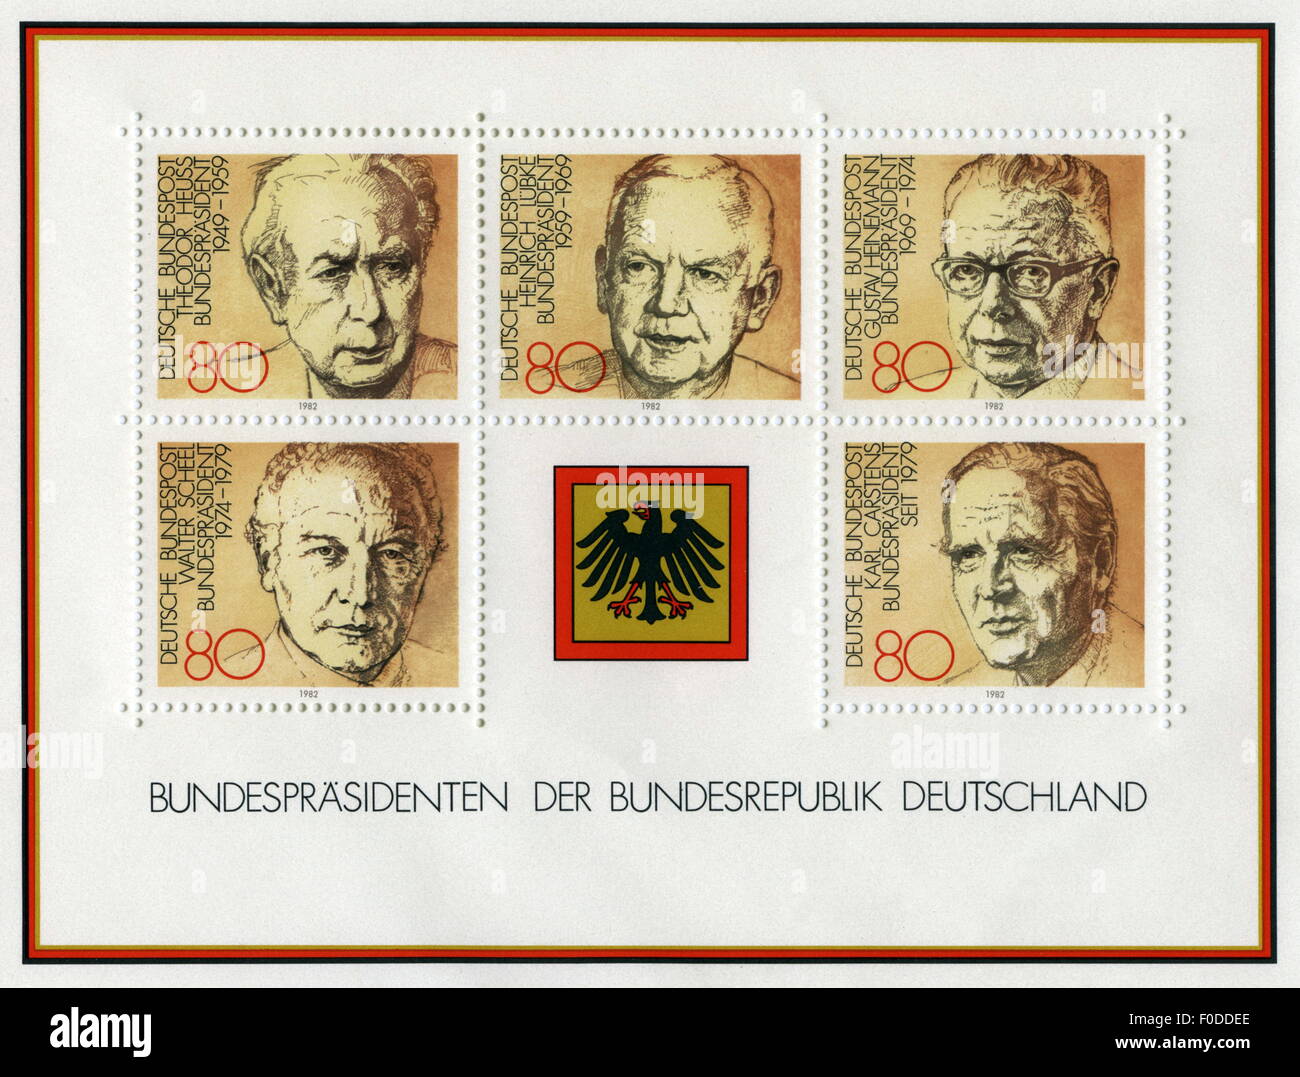 Post, Briefmarken, Deutsche Bundespost, 80 Pfennigmarken, Block Bundespräsident, 1982, Zusatzrechte-Abfertigung-nicht vorhanden Stockfoto